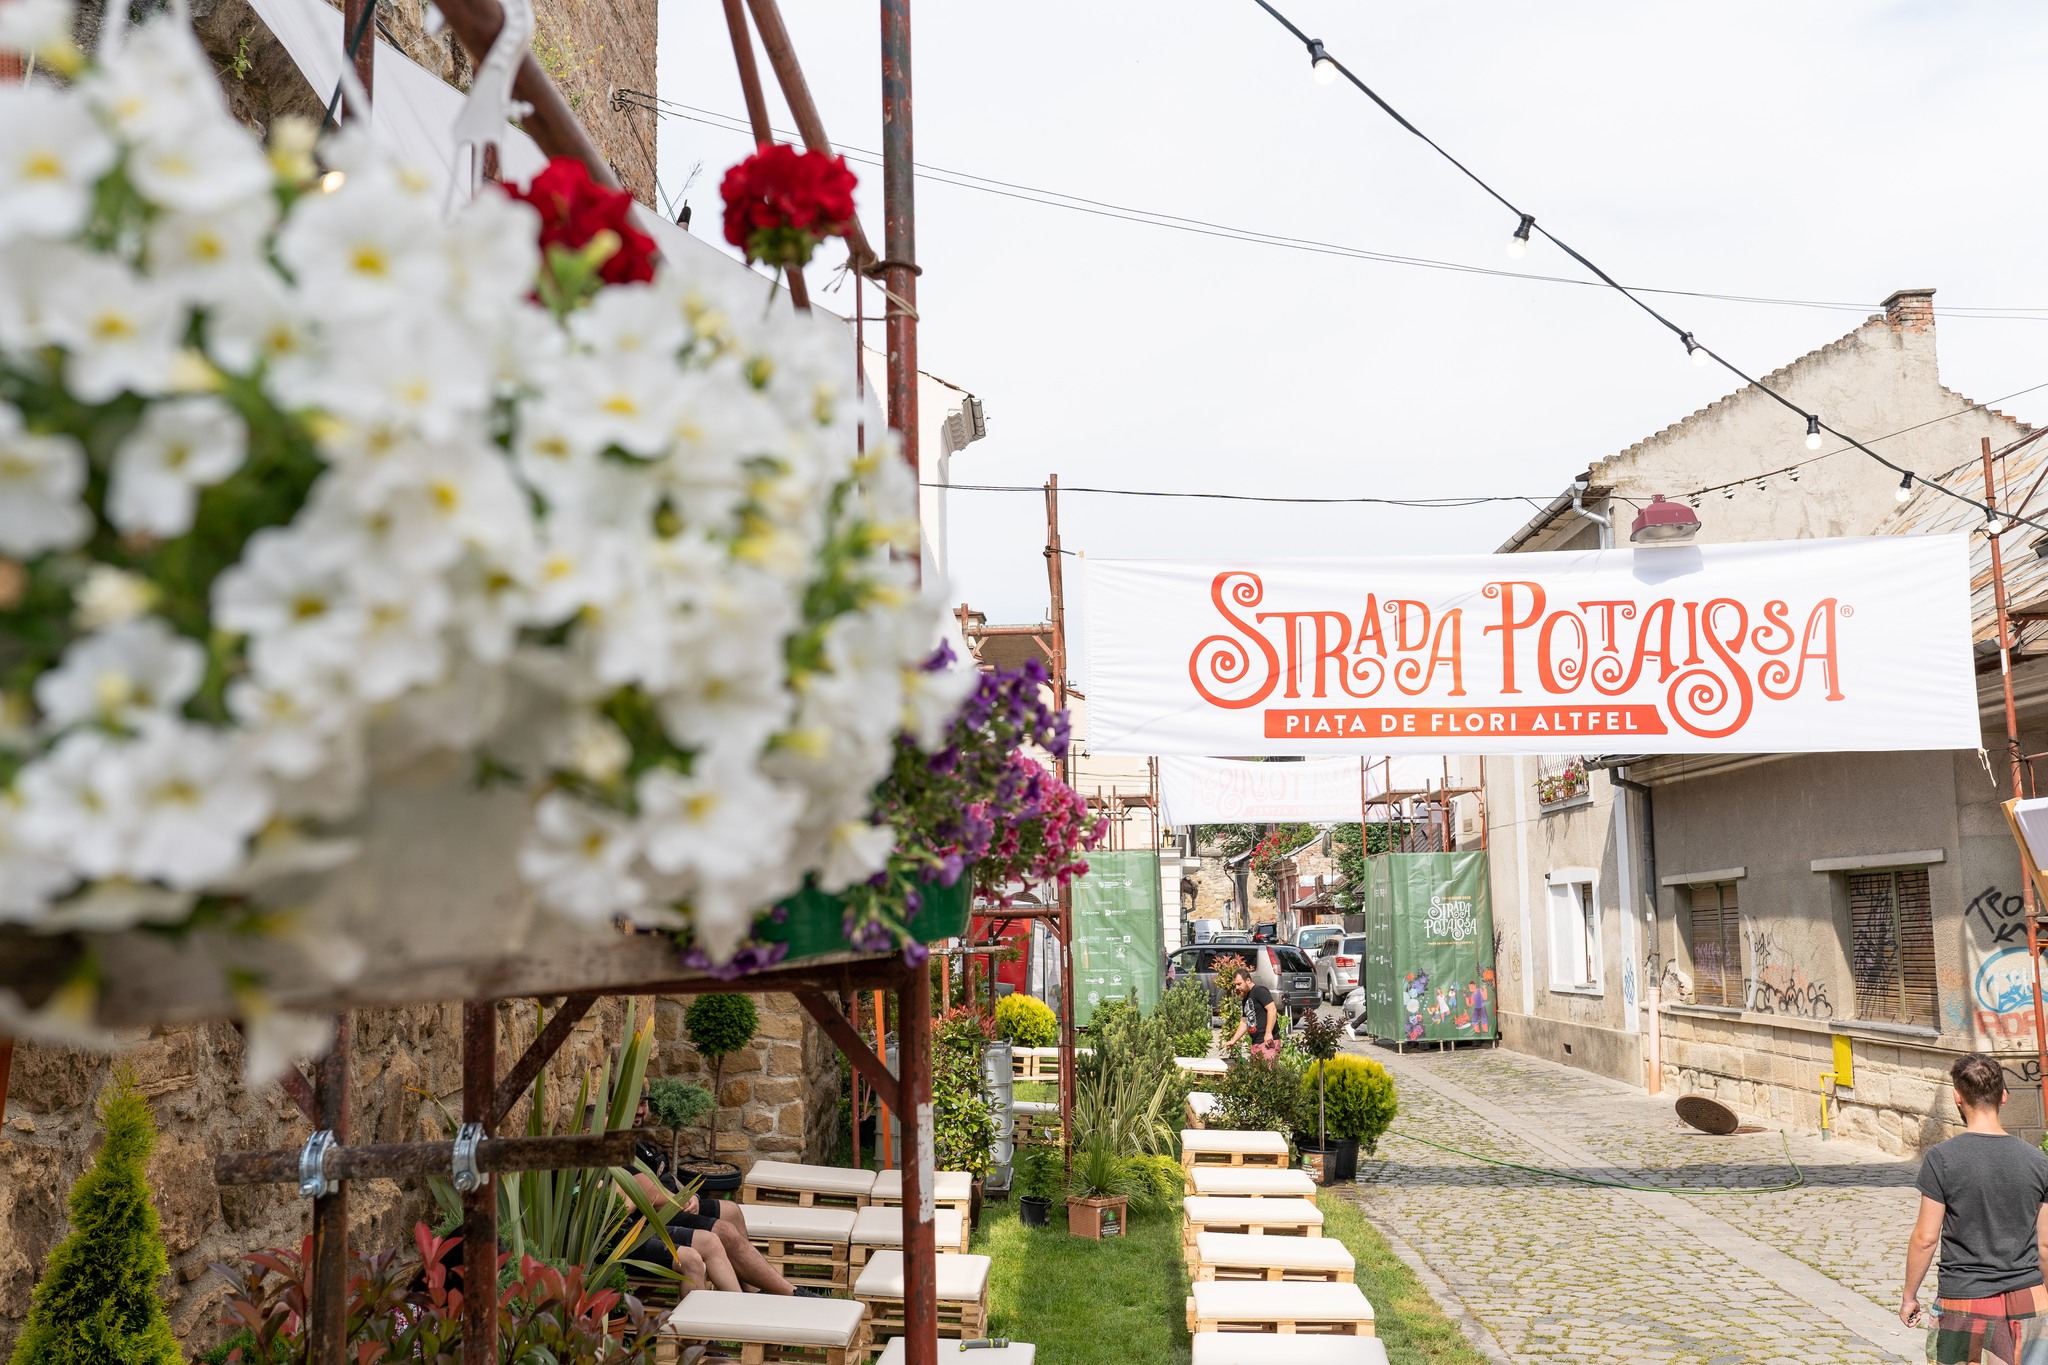 Strada Potaissa din Cluj Napoca redevine piața de flori 1